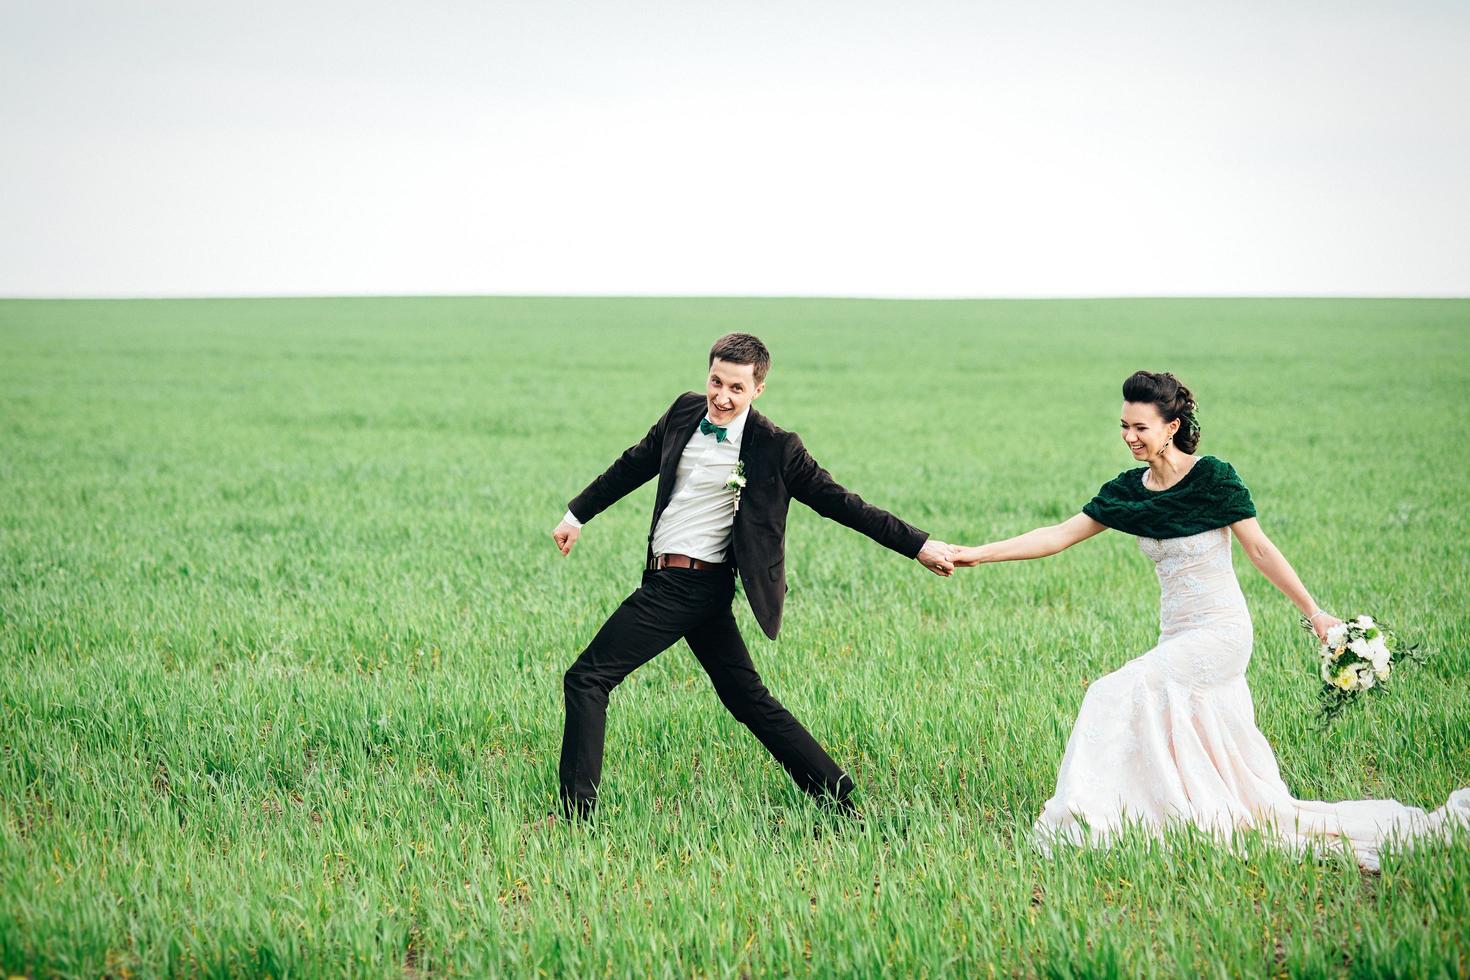 de bruidegom in een bruin pak en de bruid in een ivoorkleurige jurk op een groen veld foto